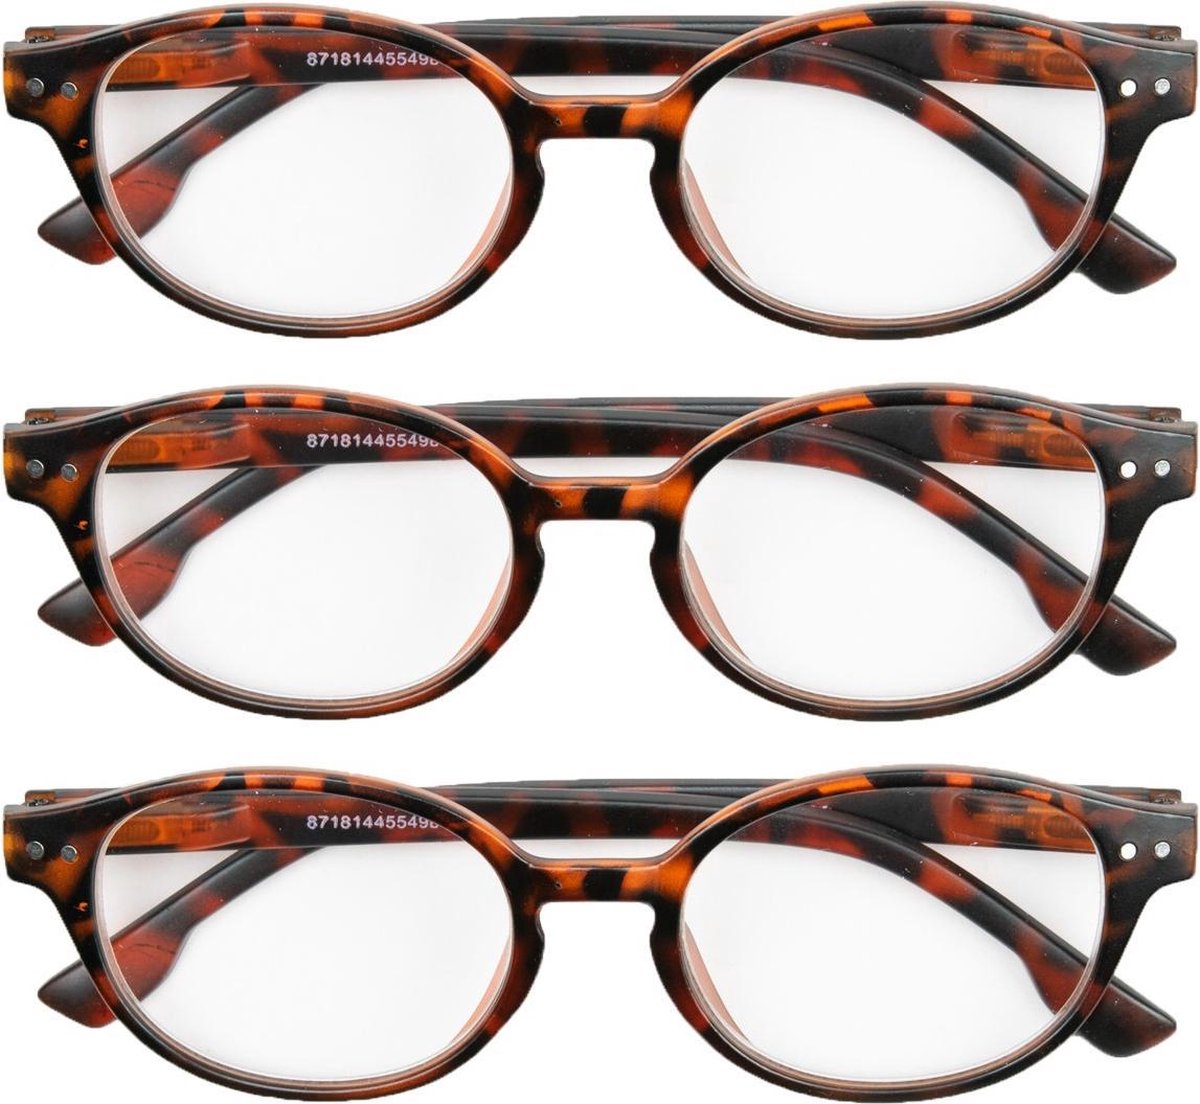 Leesbril mat havanna rond +2,50 - 3 stuks - leesbrillen bruin